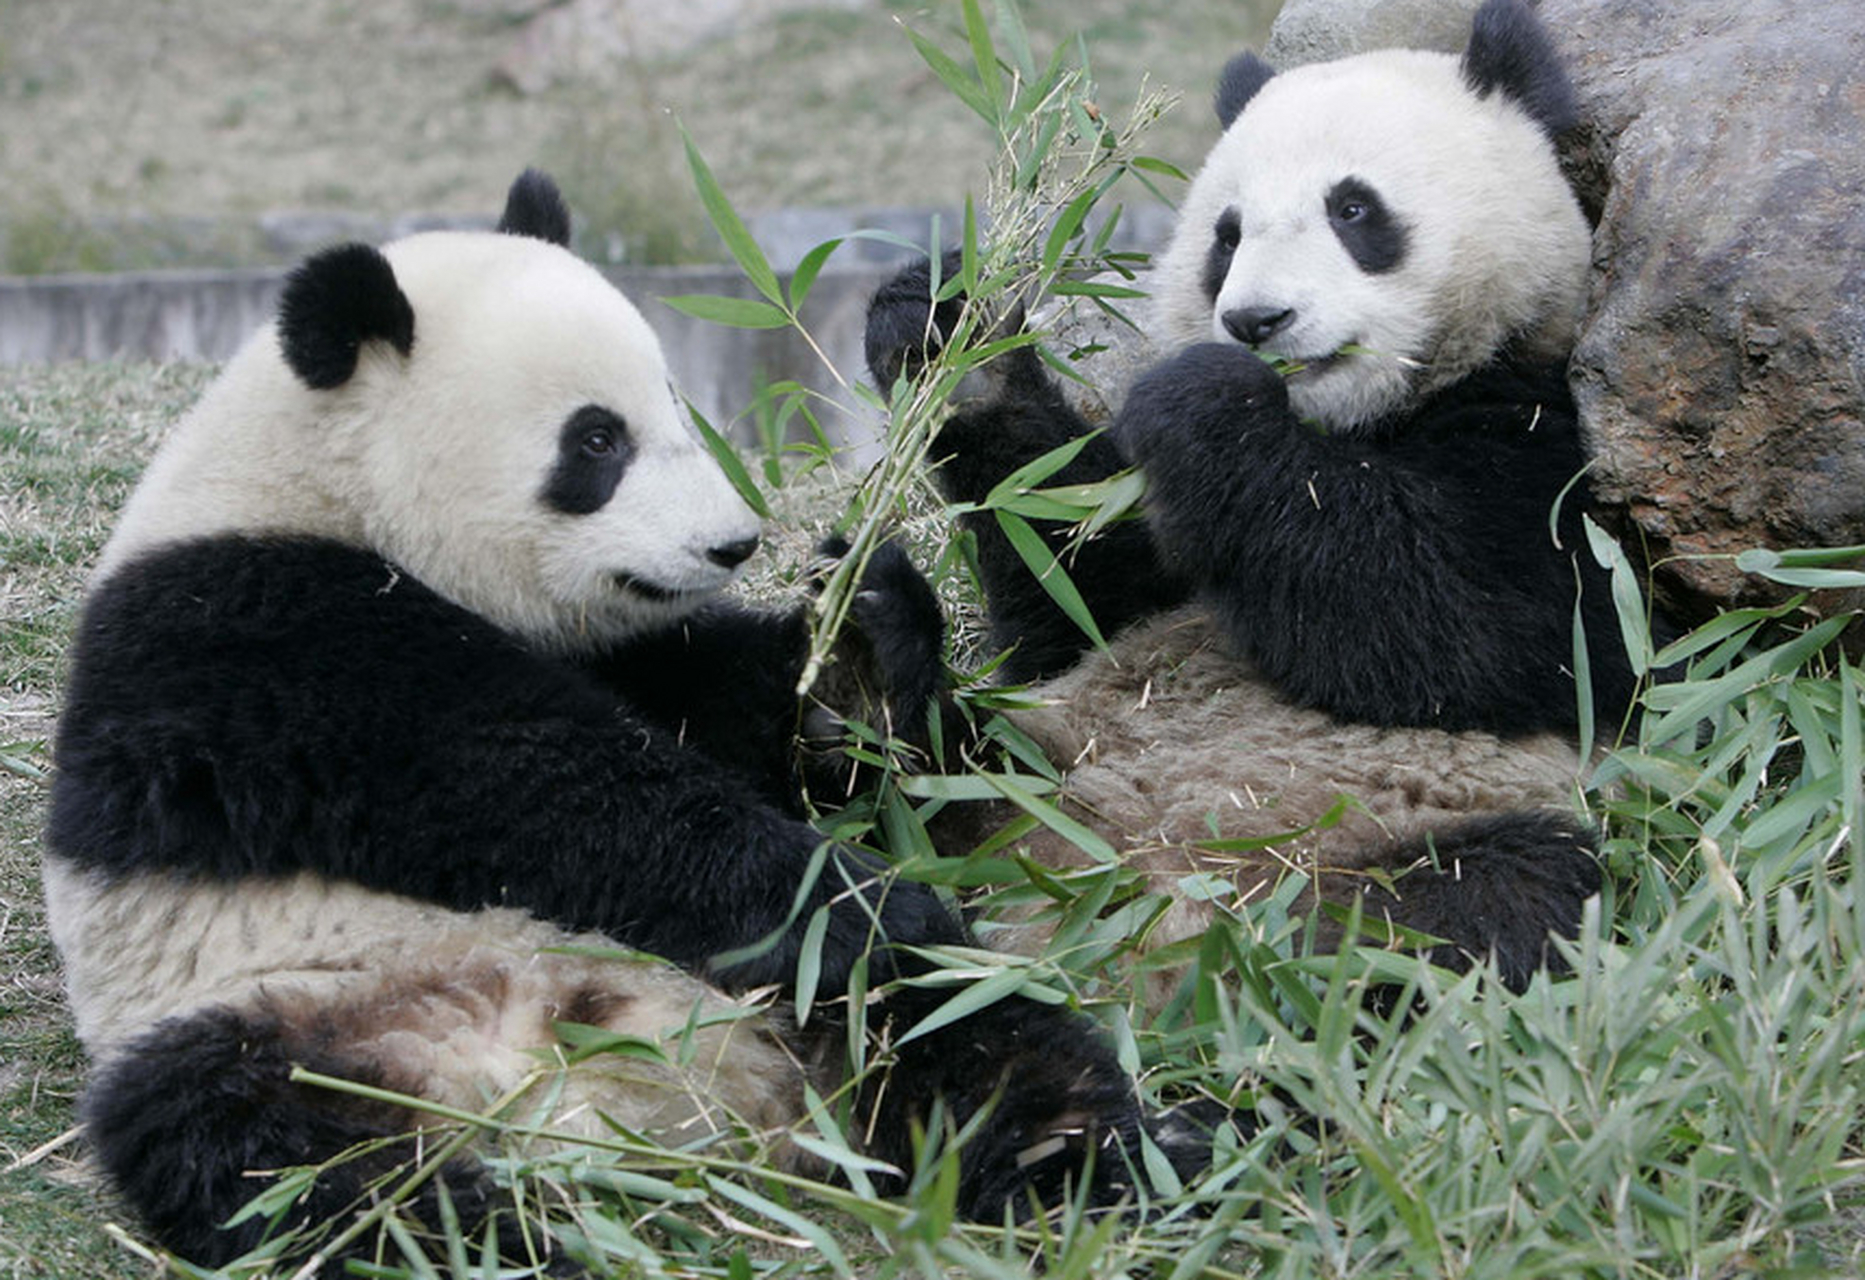 熊猫野生的生活环境主要分为森林和竹林两种,黑白相间的外表有助于